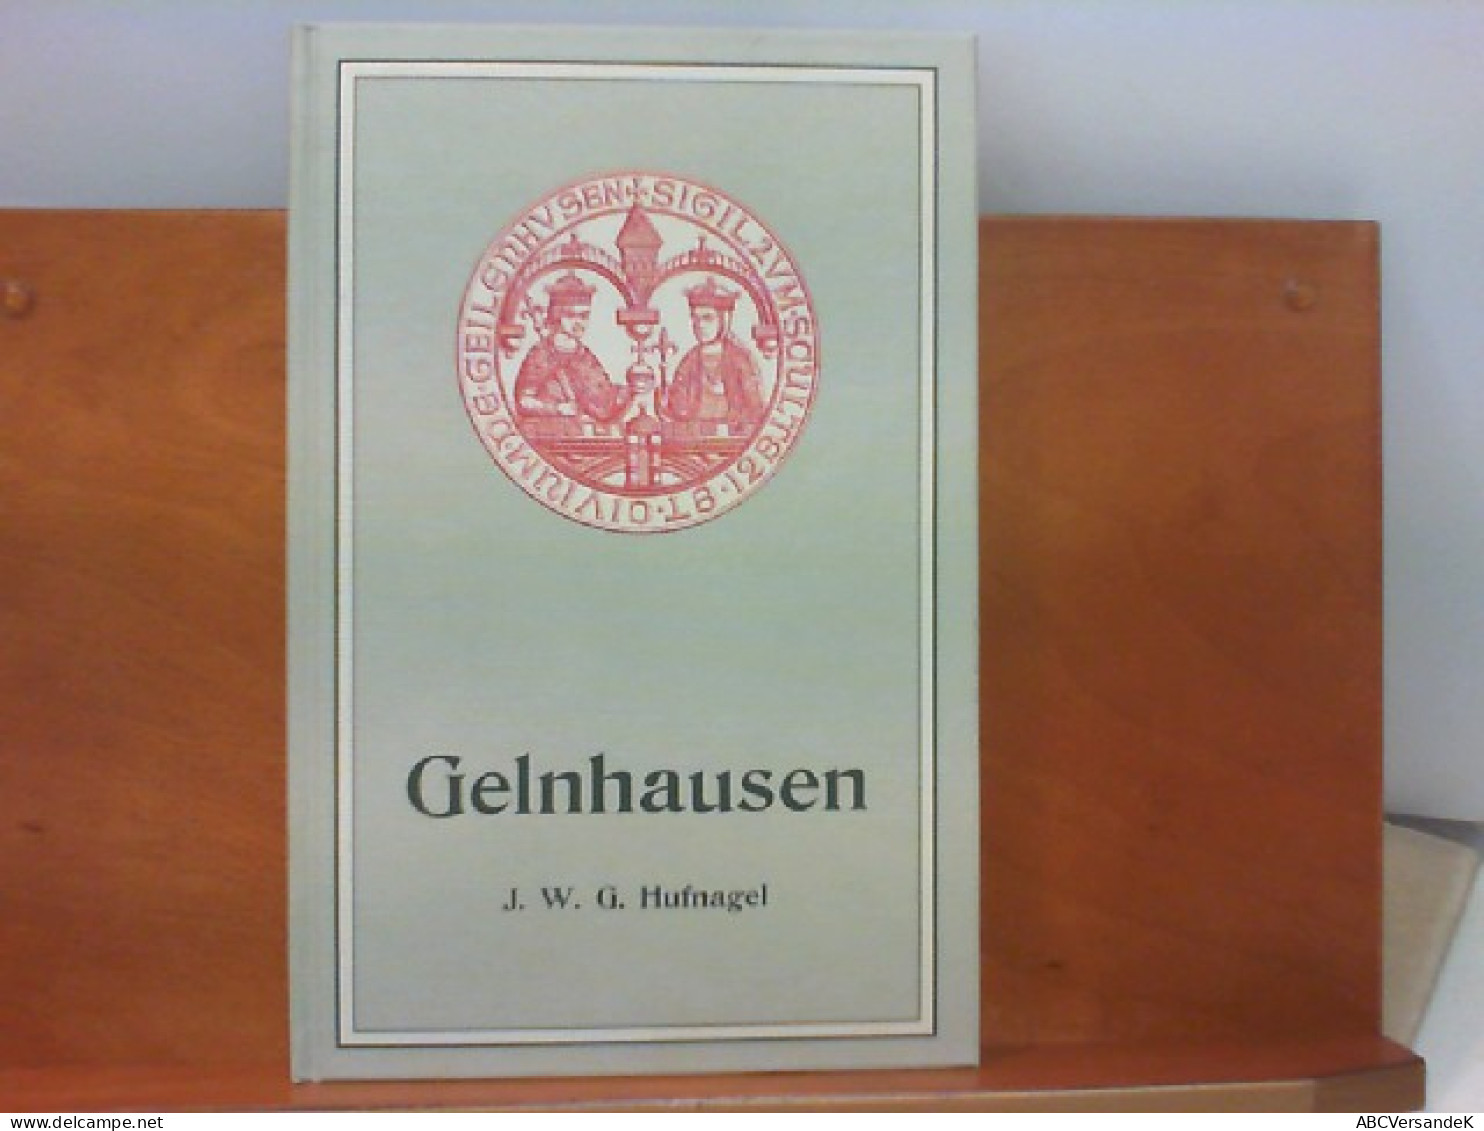 Gelnhausen - Nachdruck Der Ausgabe Gelnhausen 1900 - Hessen